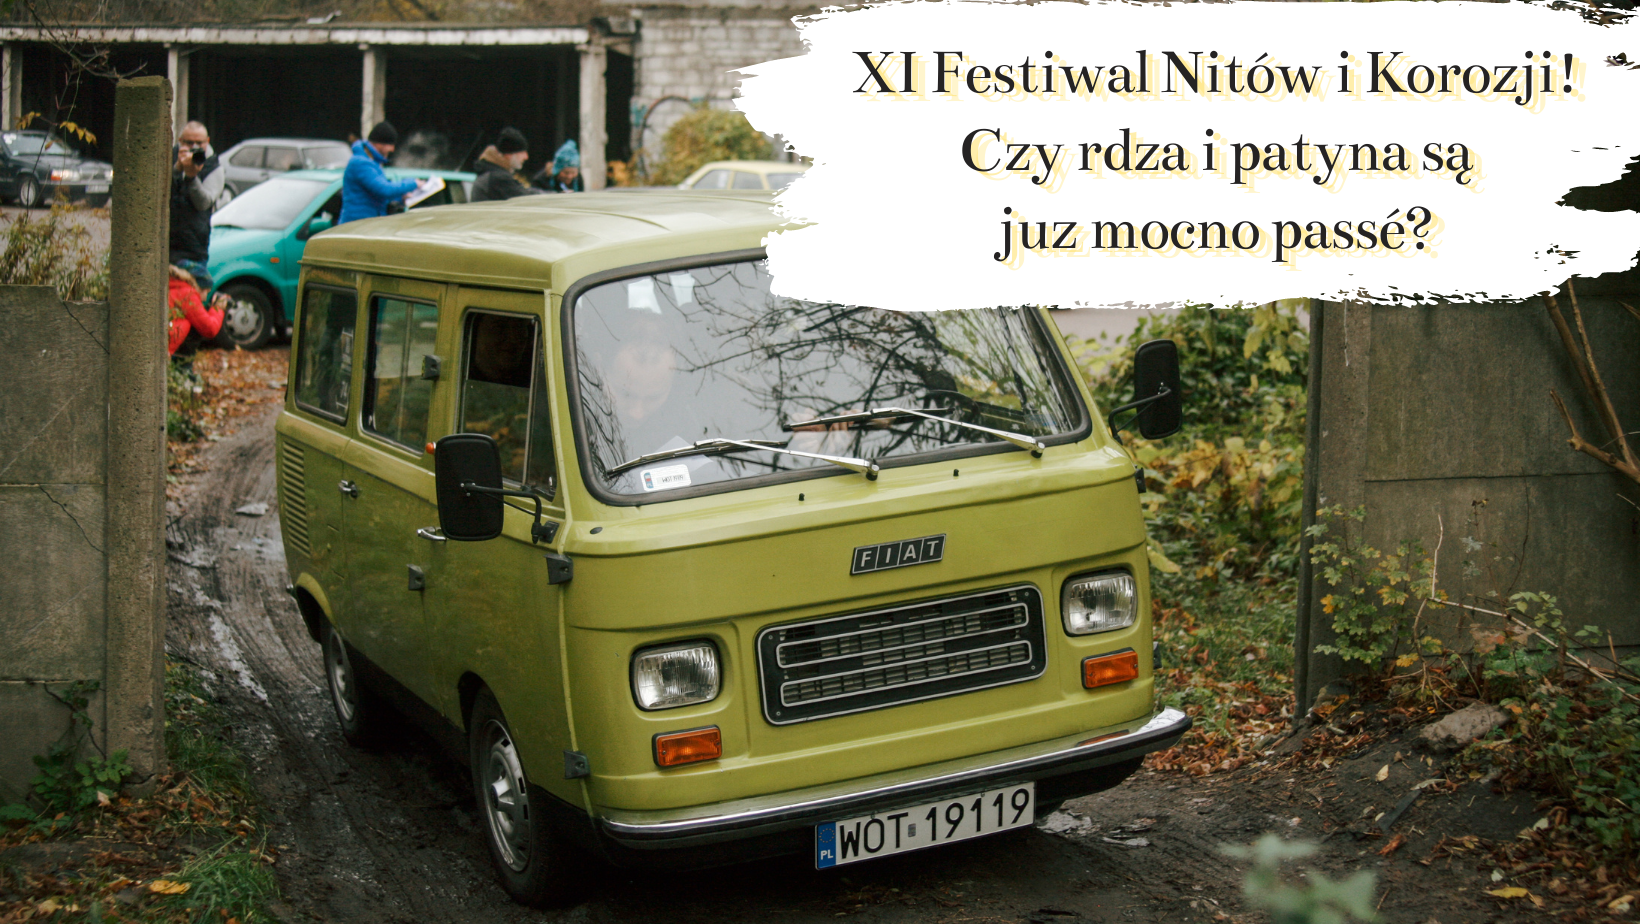 XI Festiwal Nitów i Korozji. Stado Baranów i Movendus zorganizowali wspaniały, niedzielny rajd!